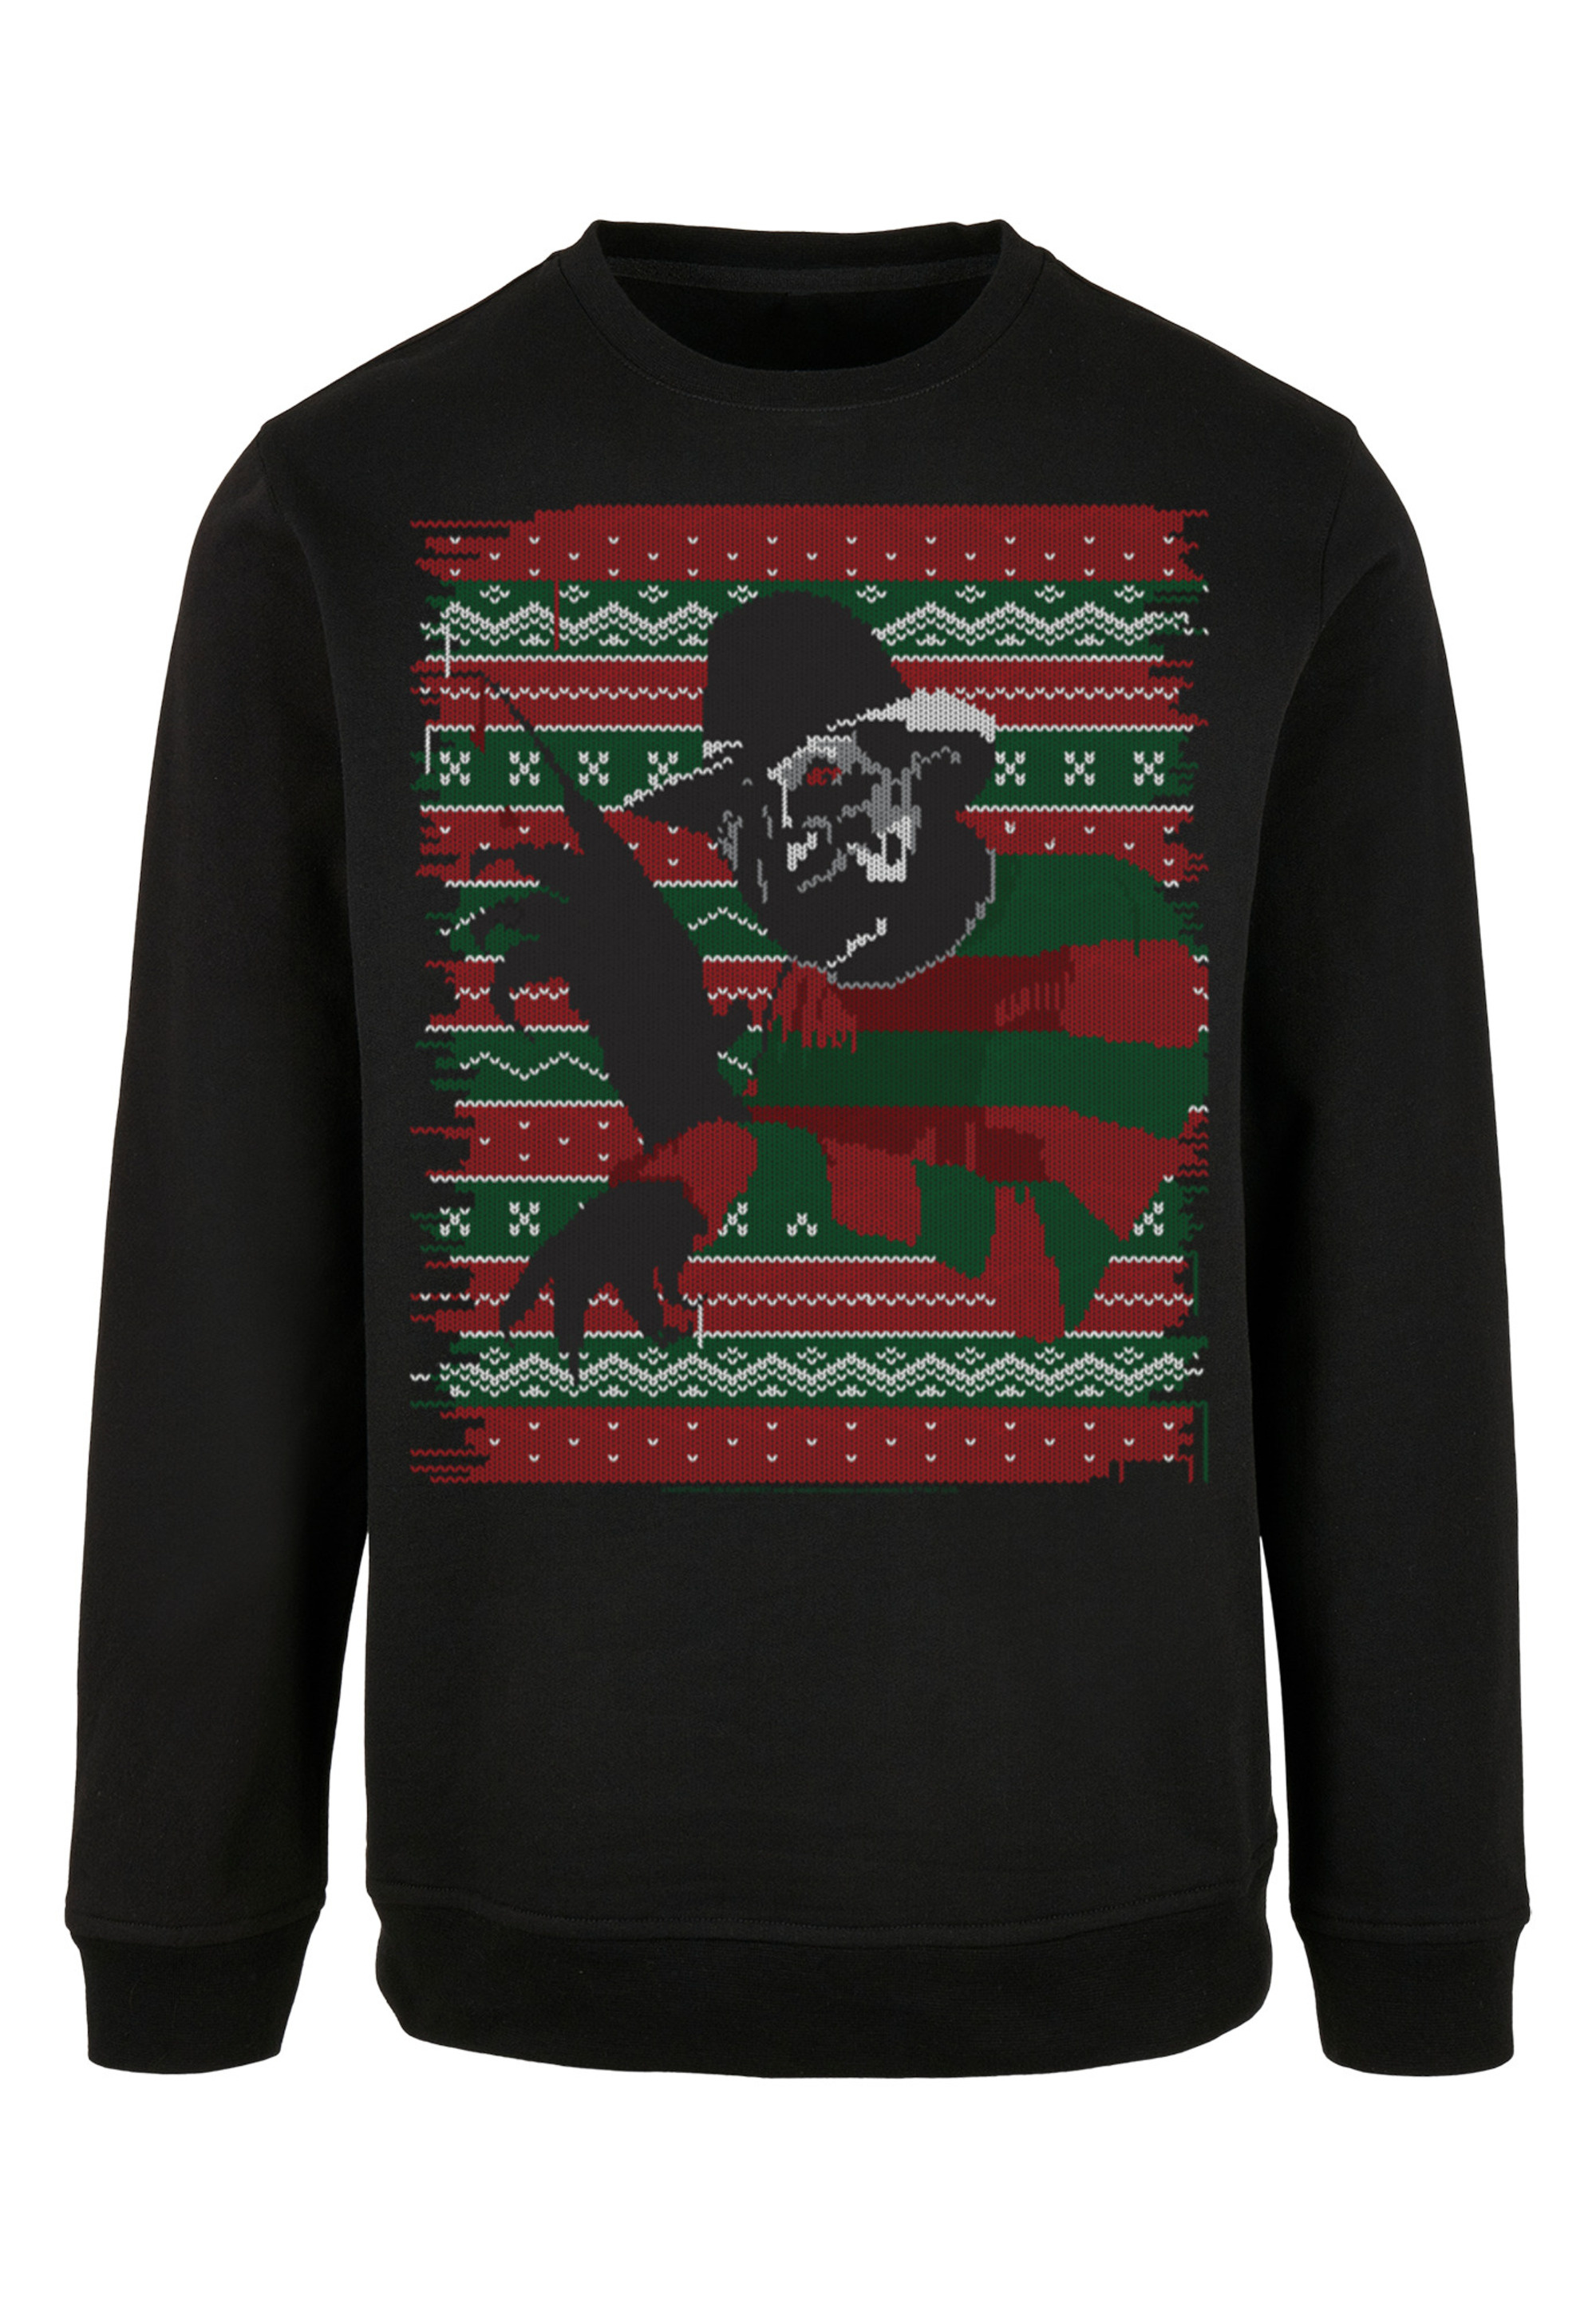 Пуловер F4NT4STIC Sweatshirt Nightmare On Elm Street Christmas Weihnachten Fair Isle, черный